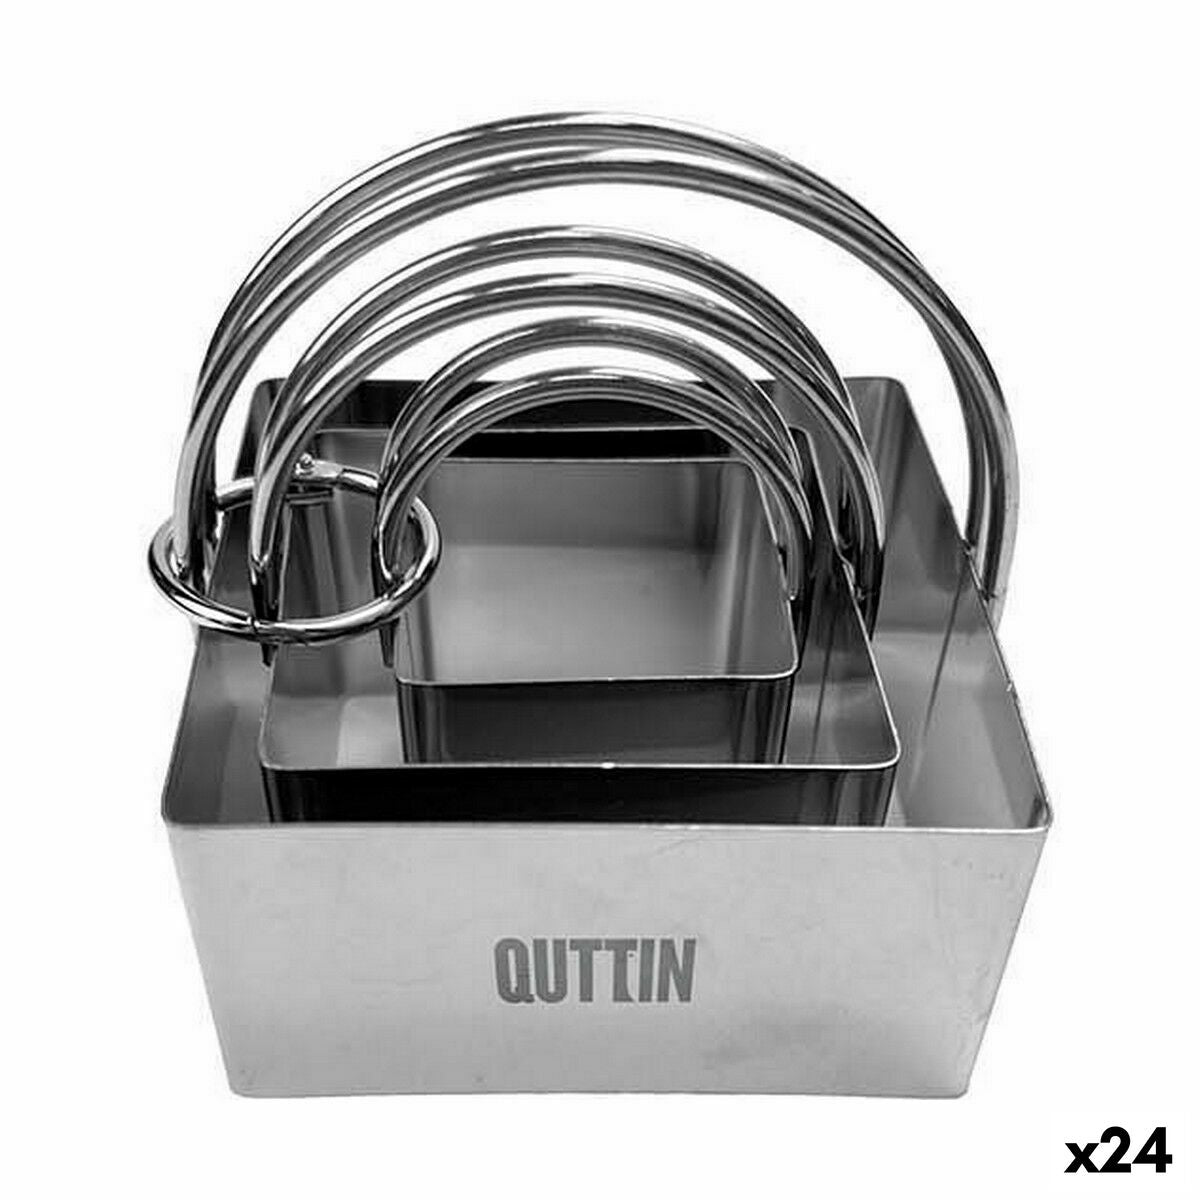 Backformen-Set Quttin Edelstahl Silberfarben karriert 3 Stücke (24 Stück)